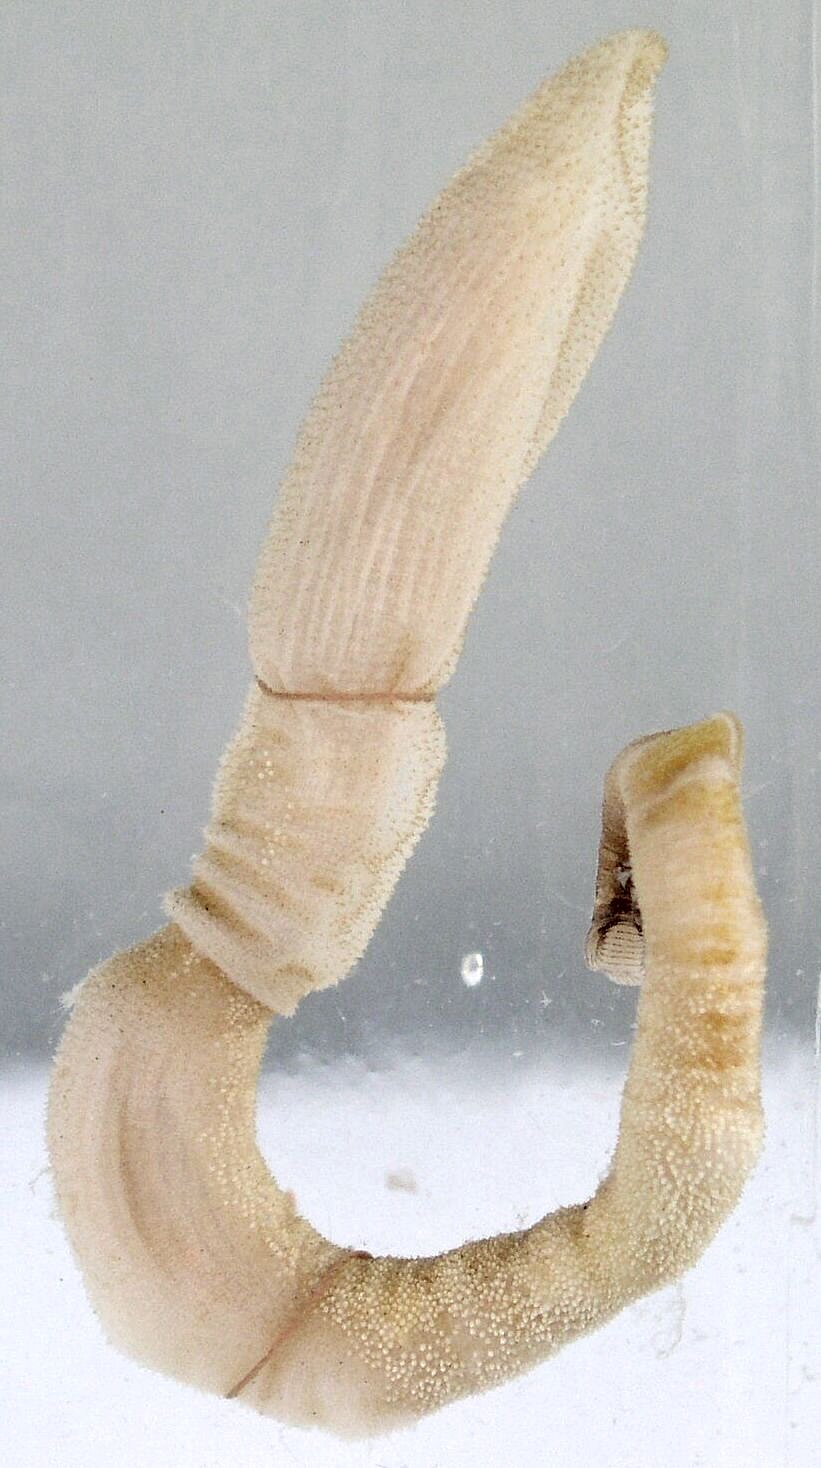 Acorn worm, a hemichordate.